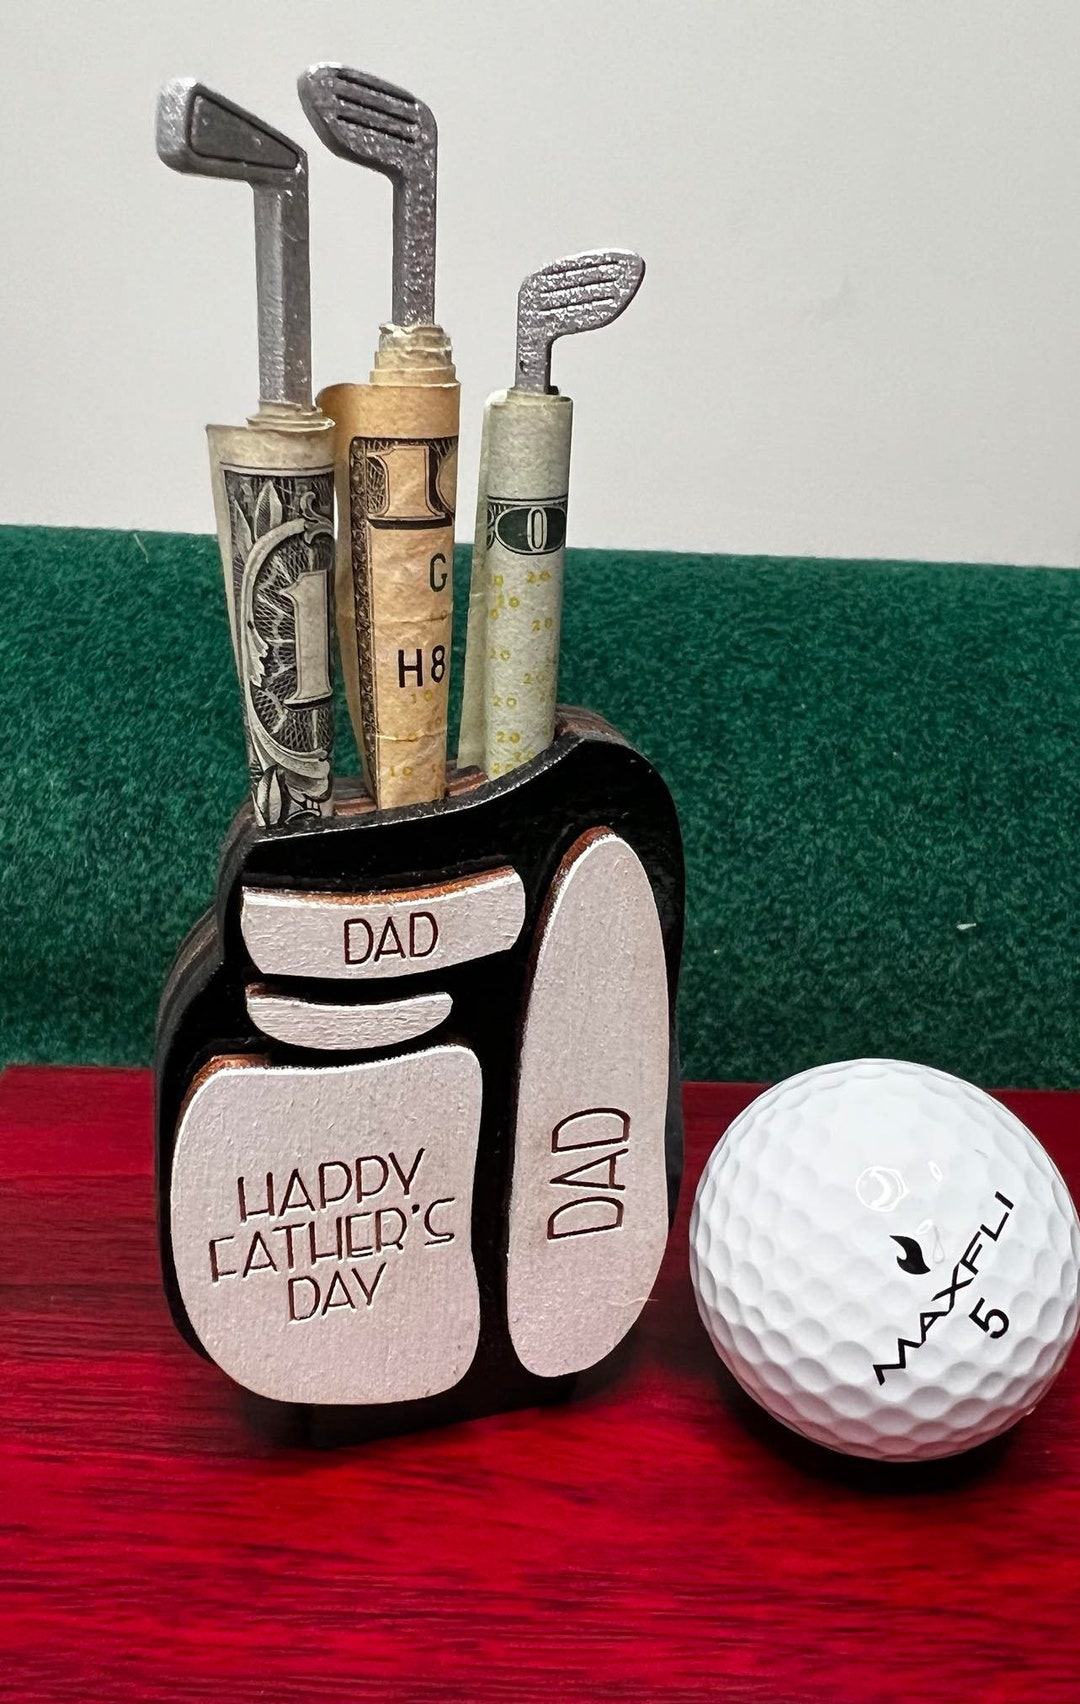 BOBI CARE Regalo personalizado para hombre amante del golf, regalo  personalizado de cumpleaños para marido, caja de golf hecha a mano, regalo  grabado